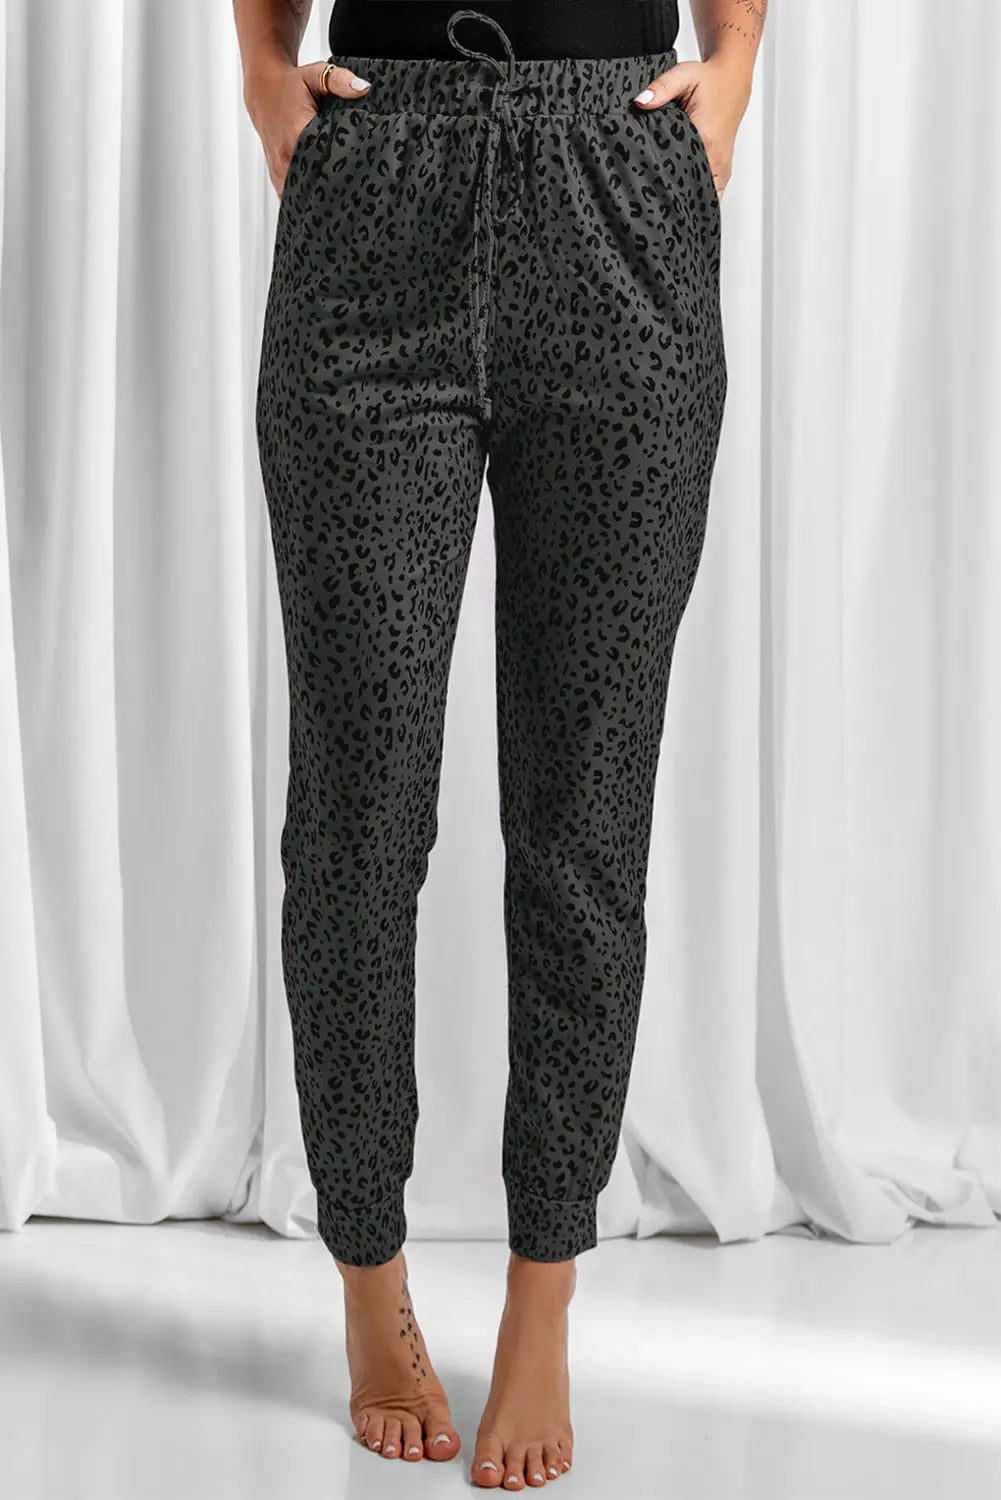 Khaki breezy leopard joggers - black1 / s / 95% polyester + 5% spandex